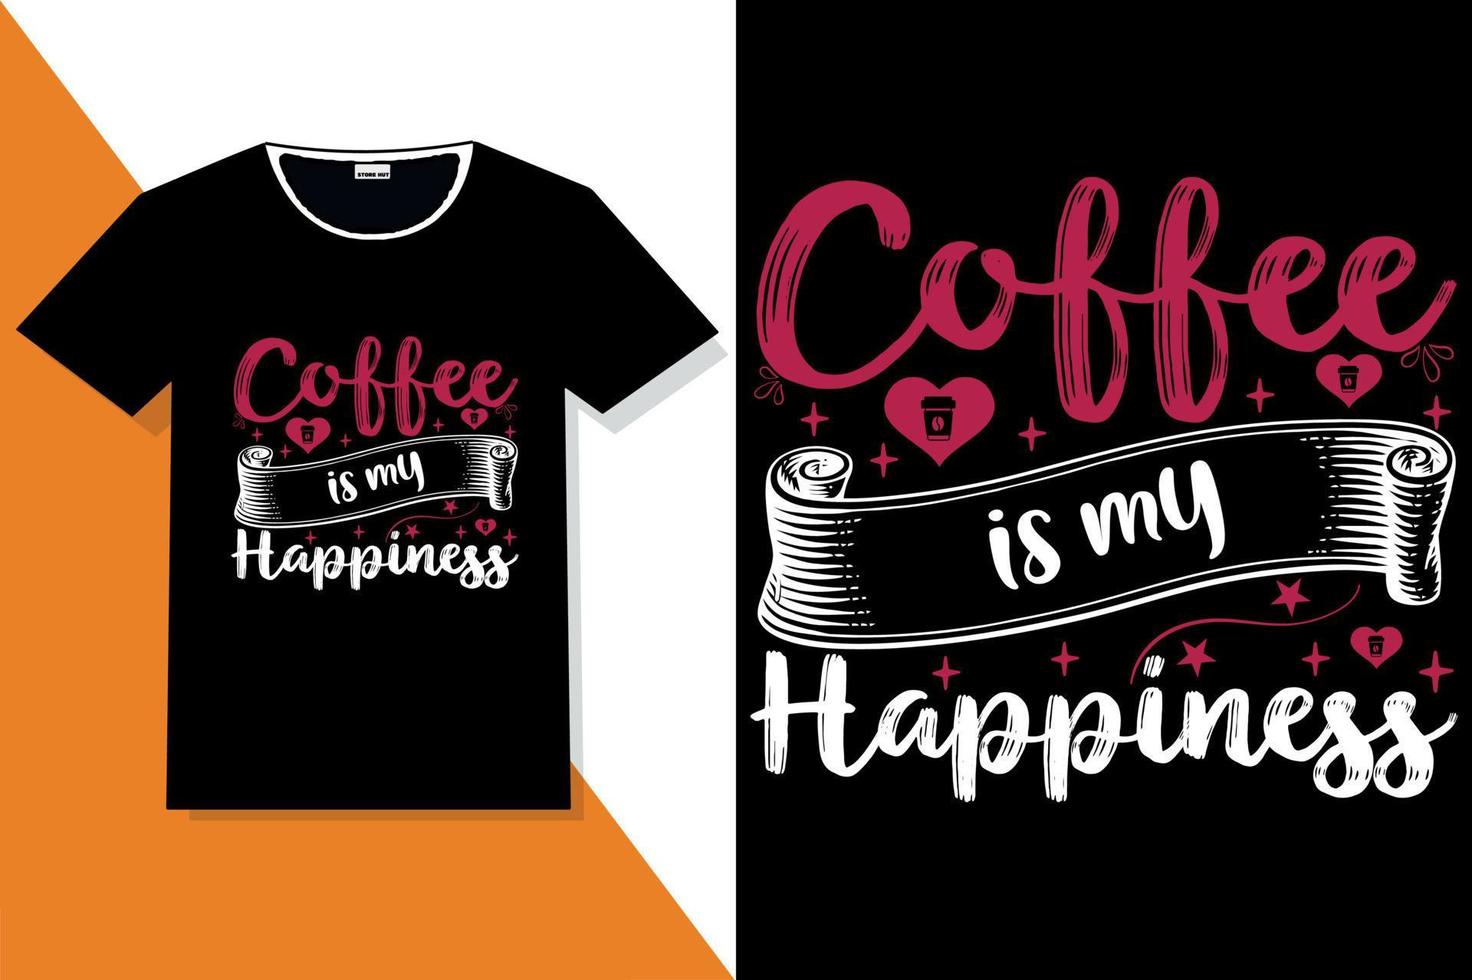 citations de motivation de café typographie ou t-shirt de typographie de café vecteur